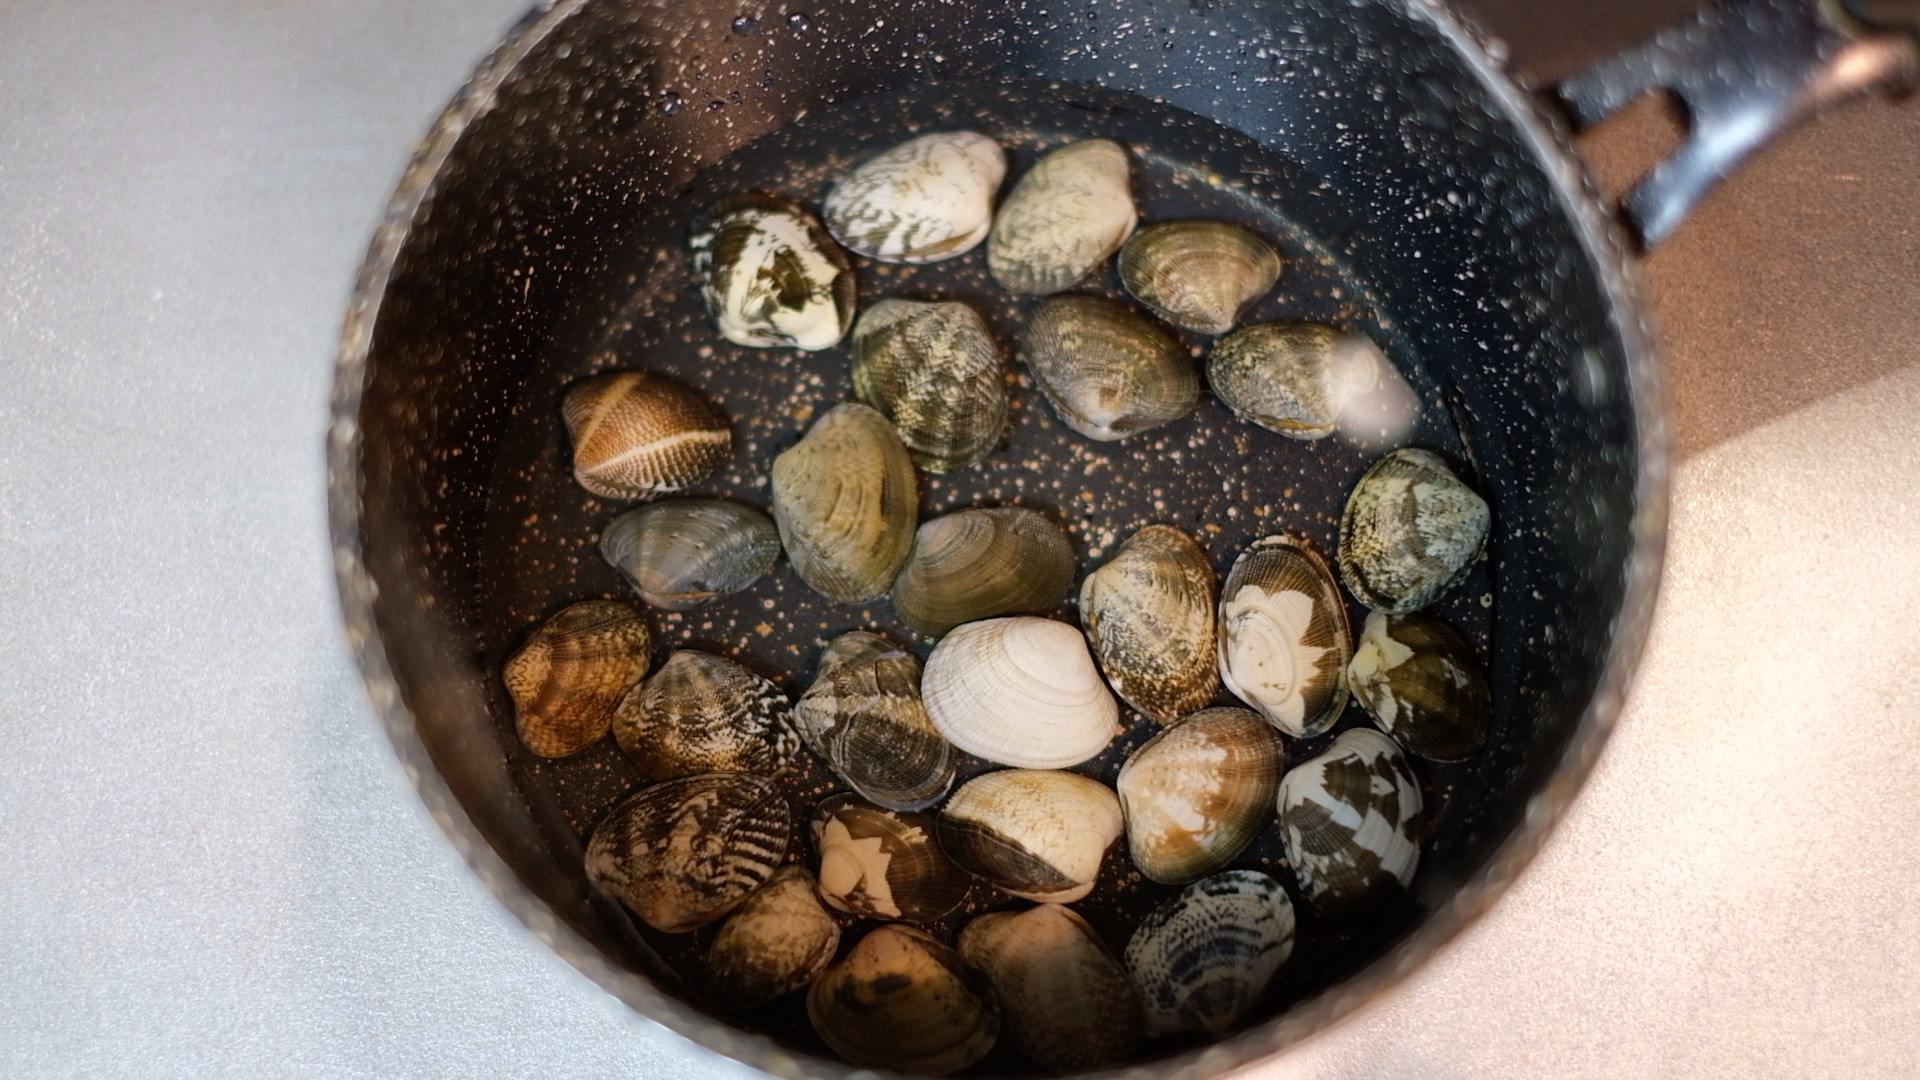 洗ったアサリを水とともに小鍋に入れた状態の画像です